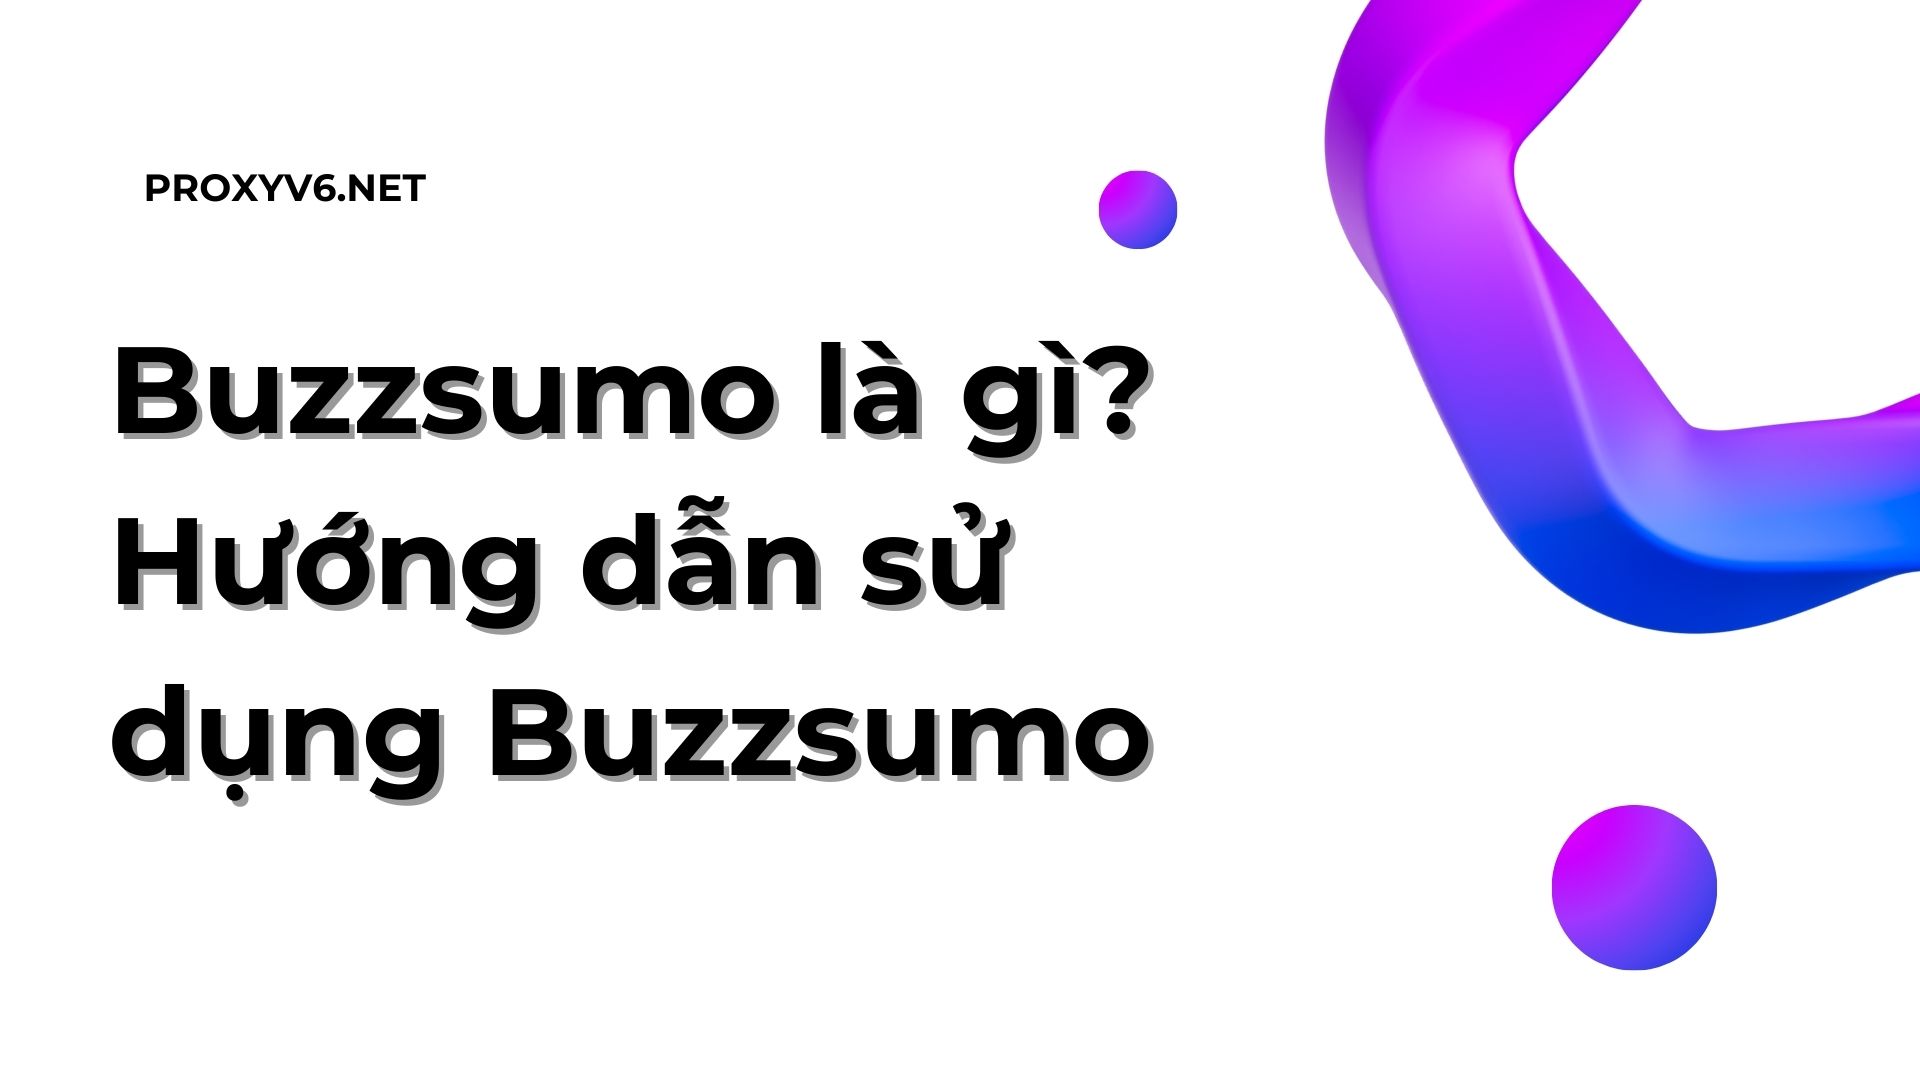 Buzzsumo là gì? Hướng dẫn sử dụng Buzzsumo